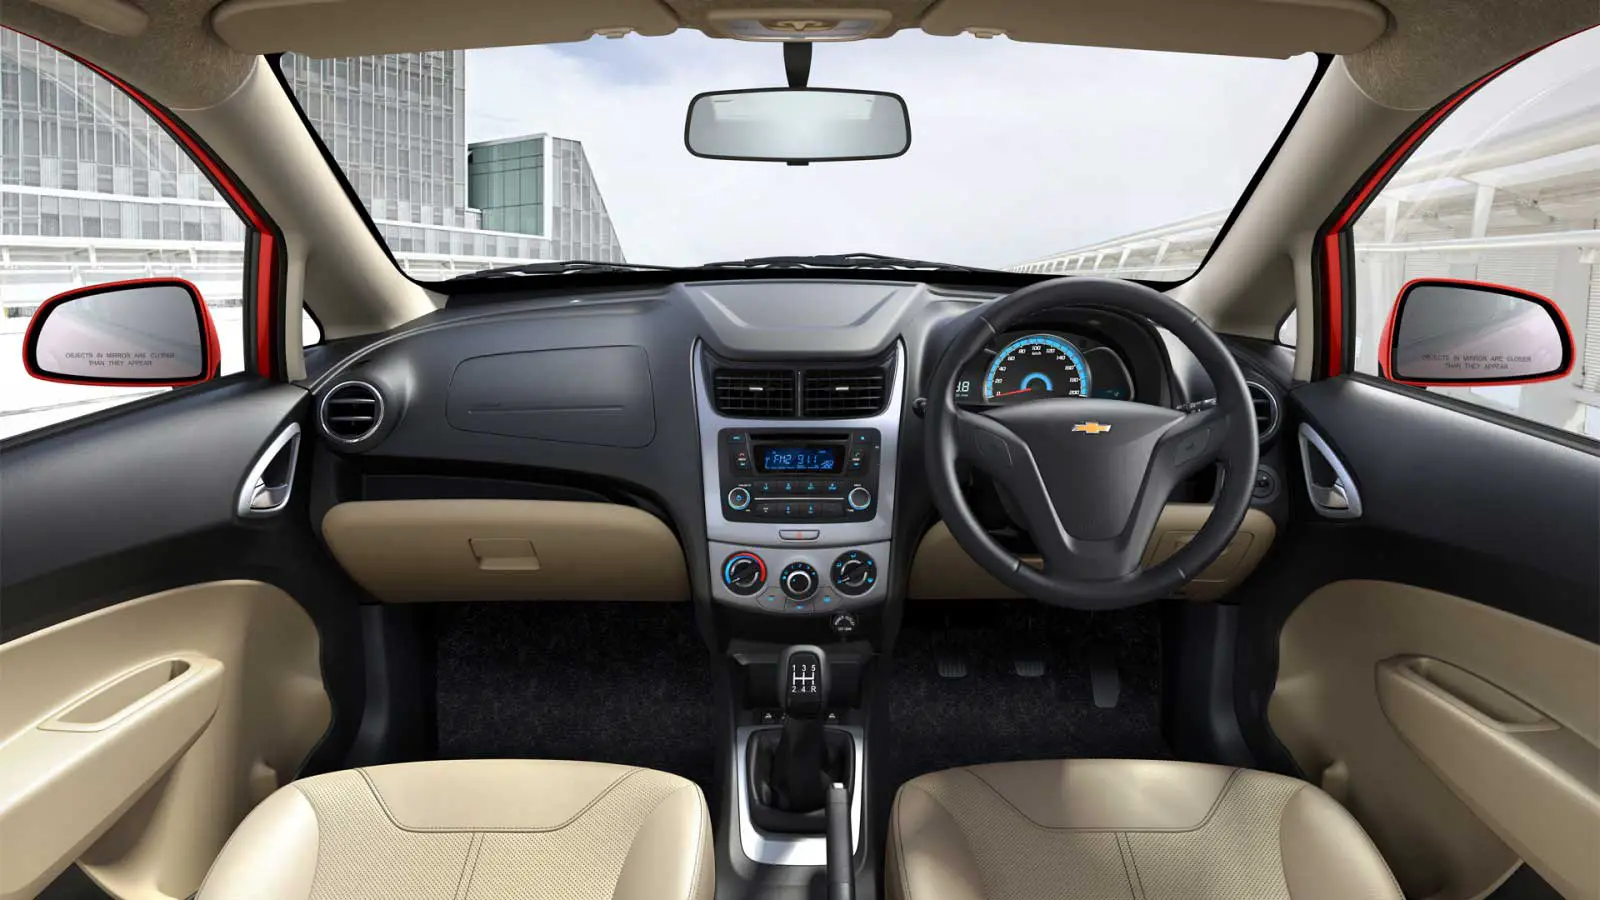 Chevrolet Sail Hatchback 1.3 LT ABS Interior